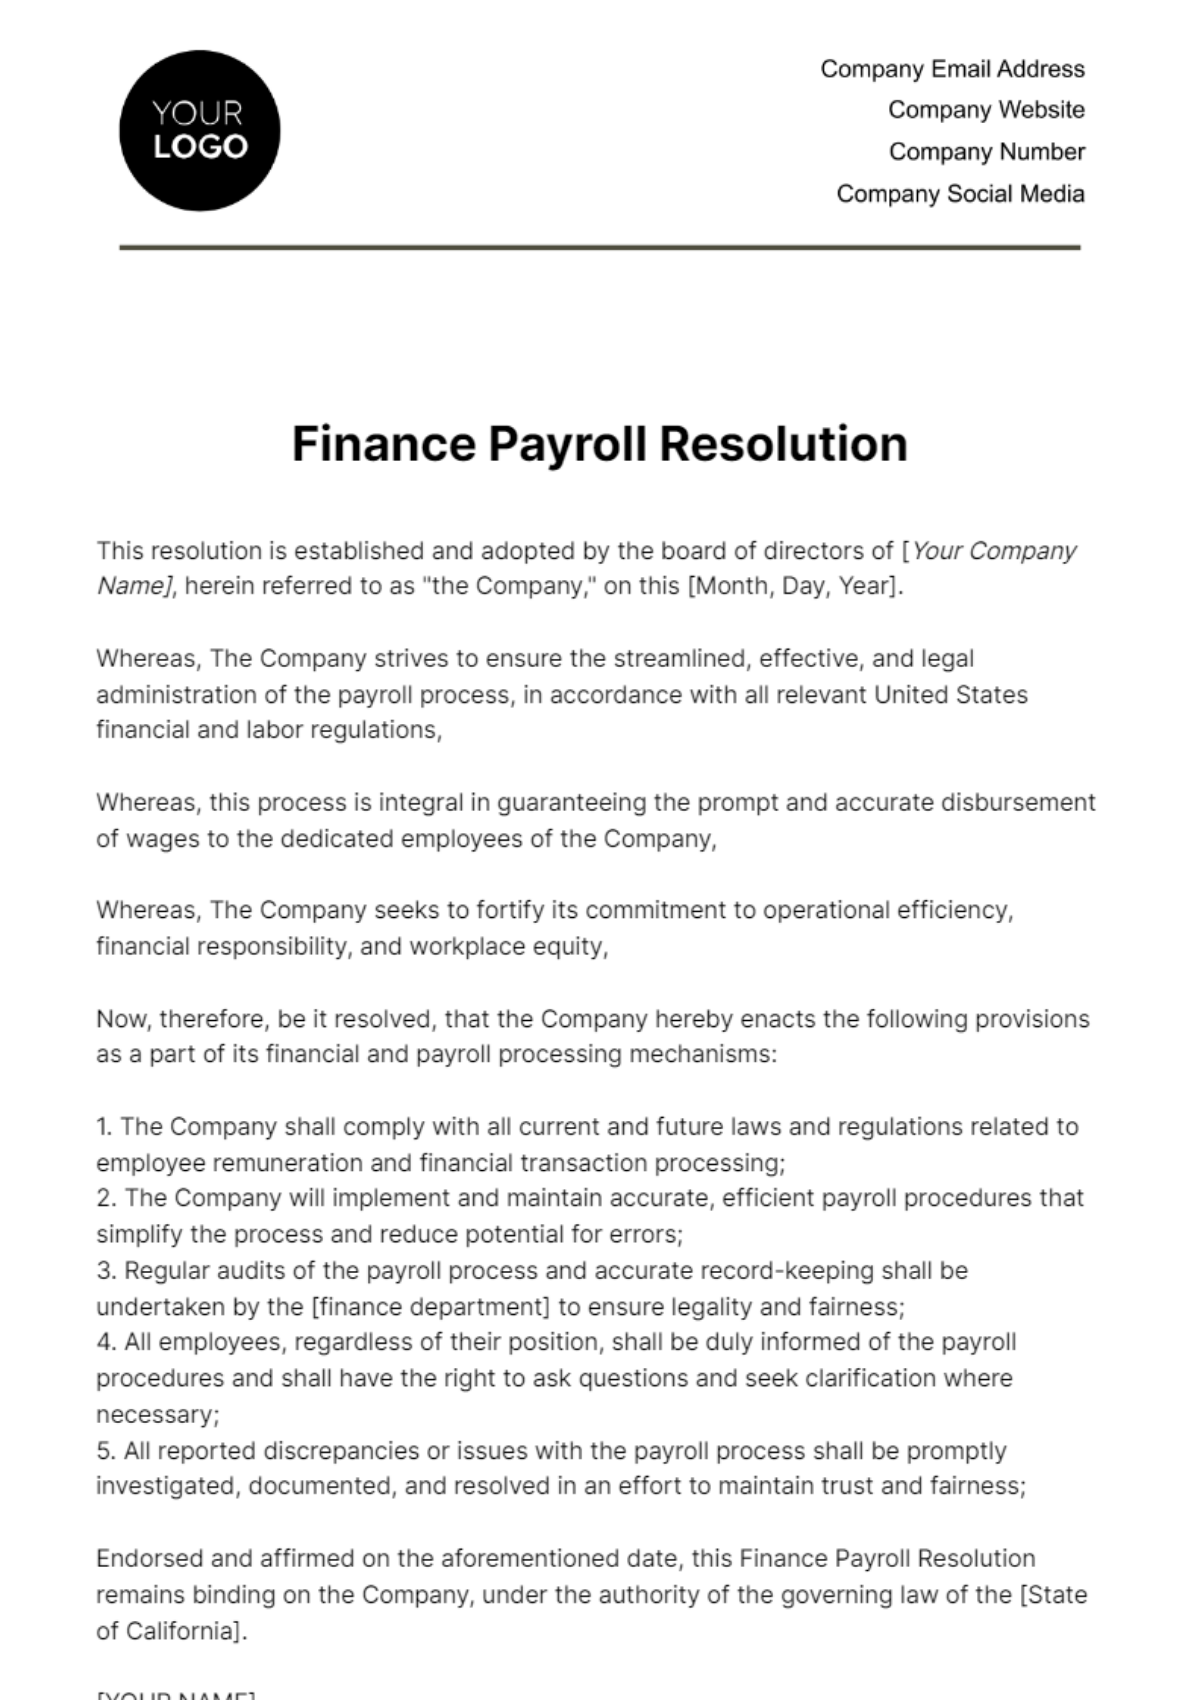 Finance Payroll Resolution Template